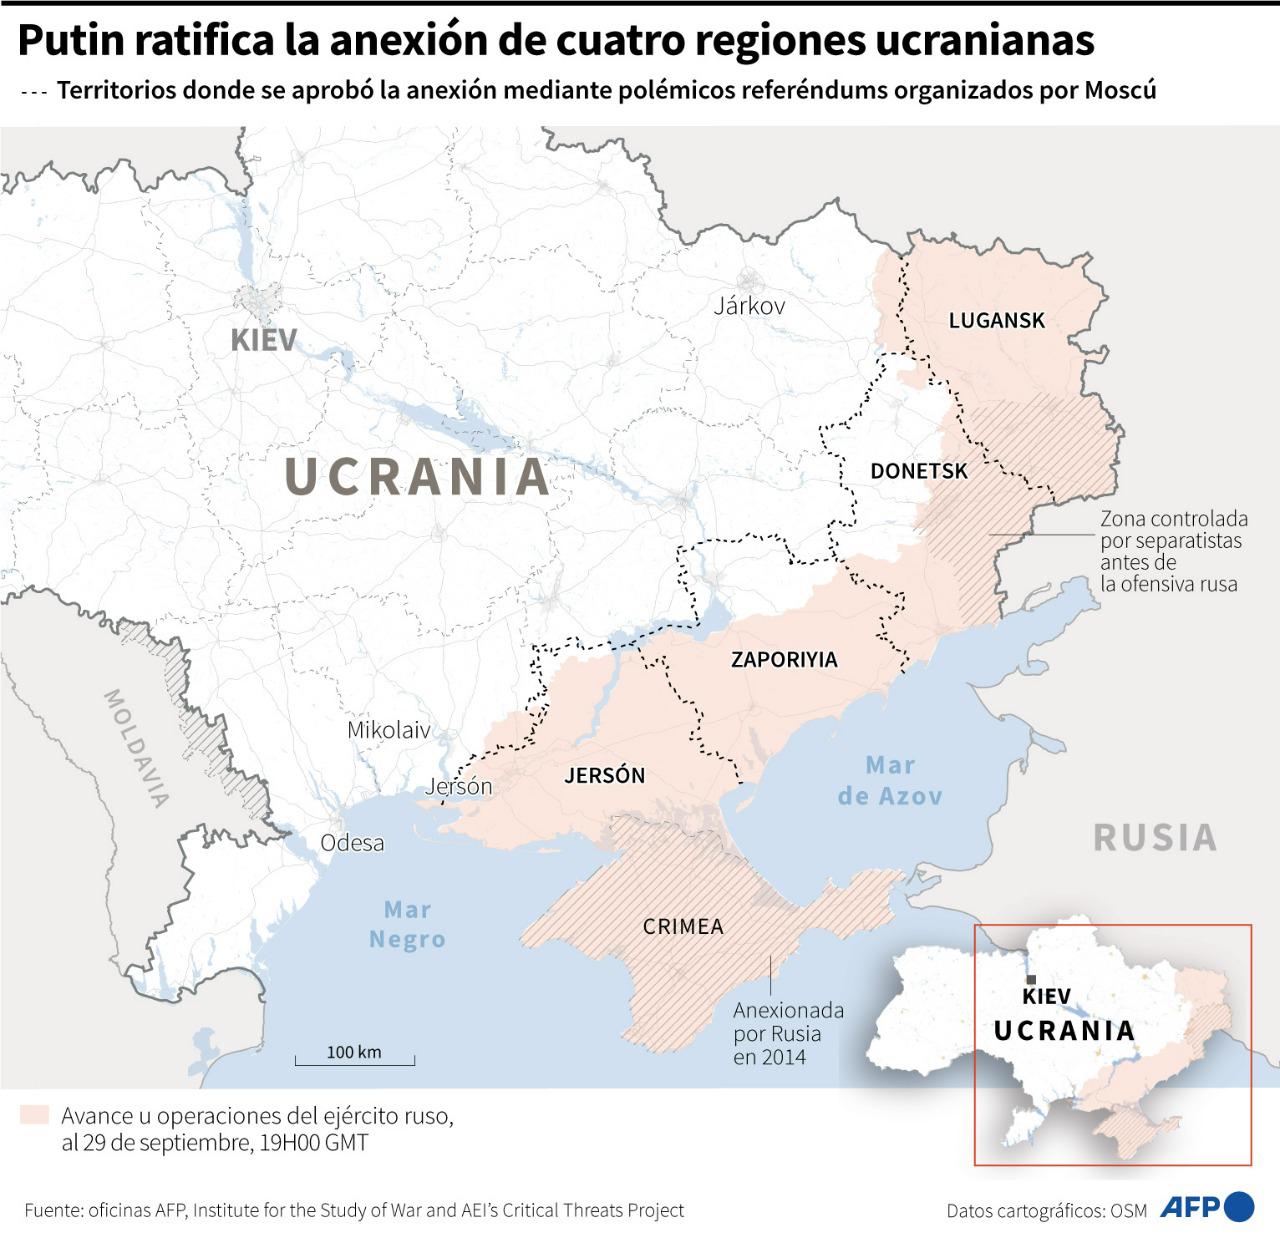 ¡Bienvenidos a casa!”, dice Putin tras firmar anexión de regiones ucranianas